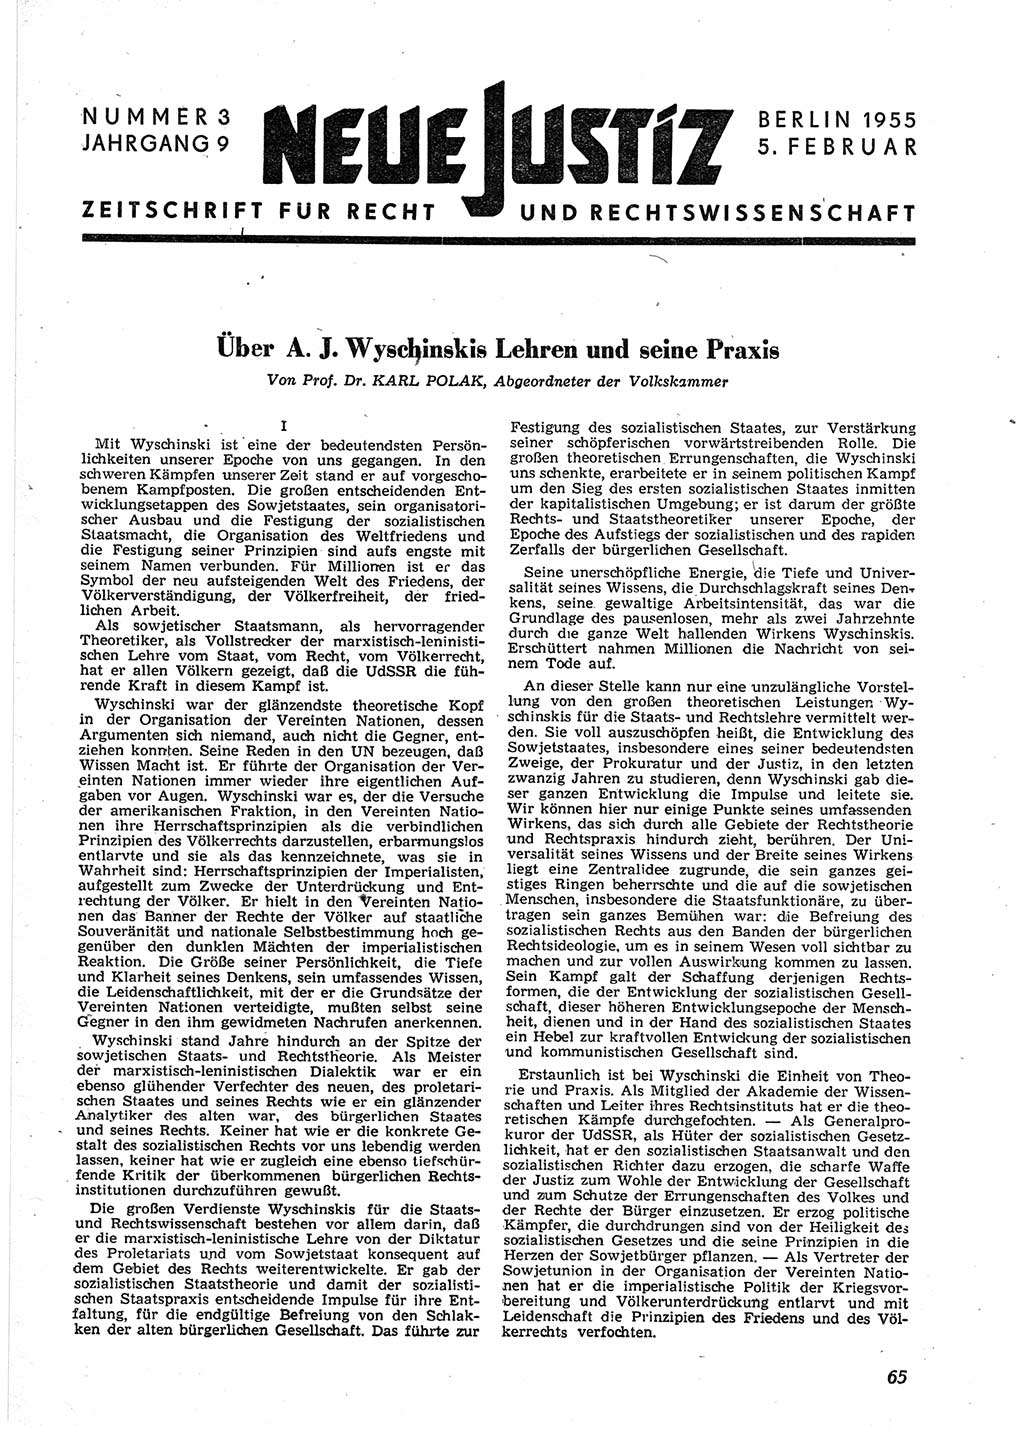 Neue Justiz (NJ), Zeitschrift für Recht und Rechtswissenschaft [Deutsche Demokratische Republik (DDR)], 9. Jahrgang 1955, Seite 65 (NJ DDR 1955, S. 65)